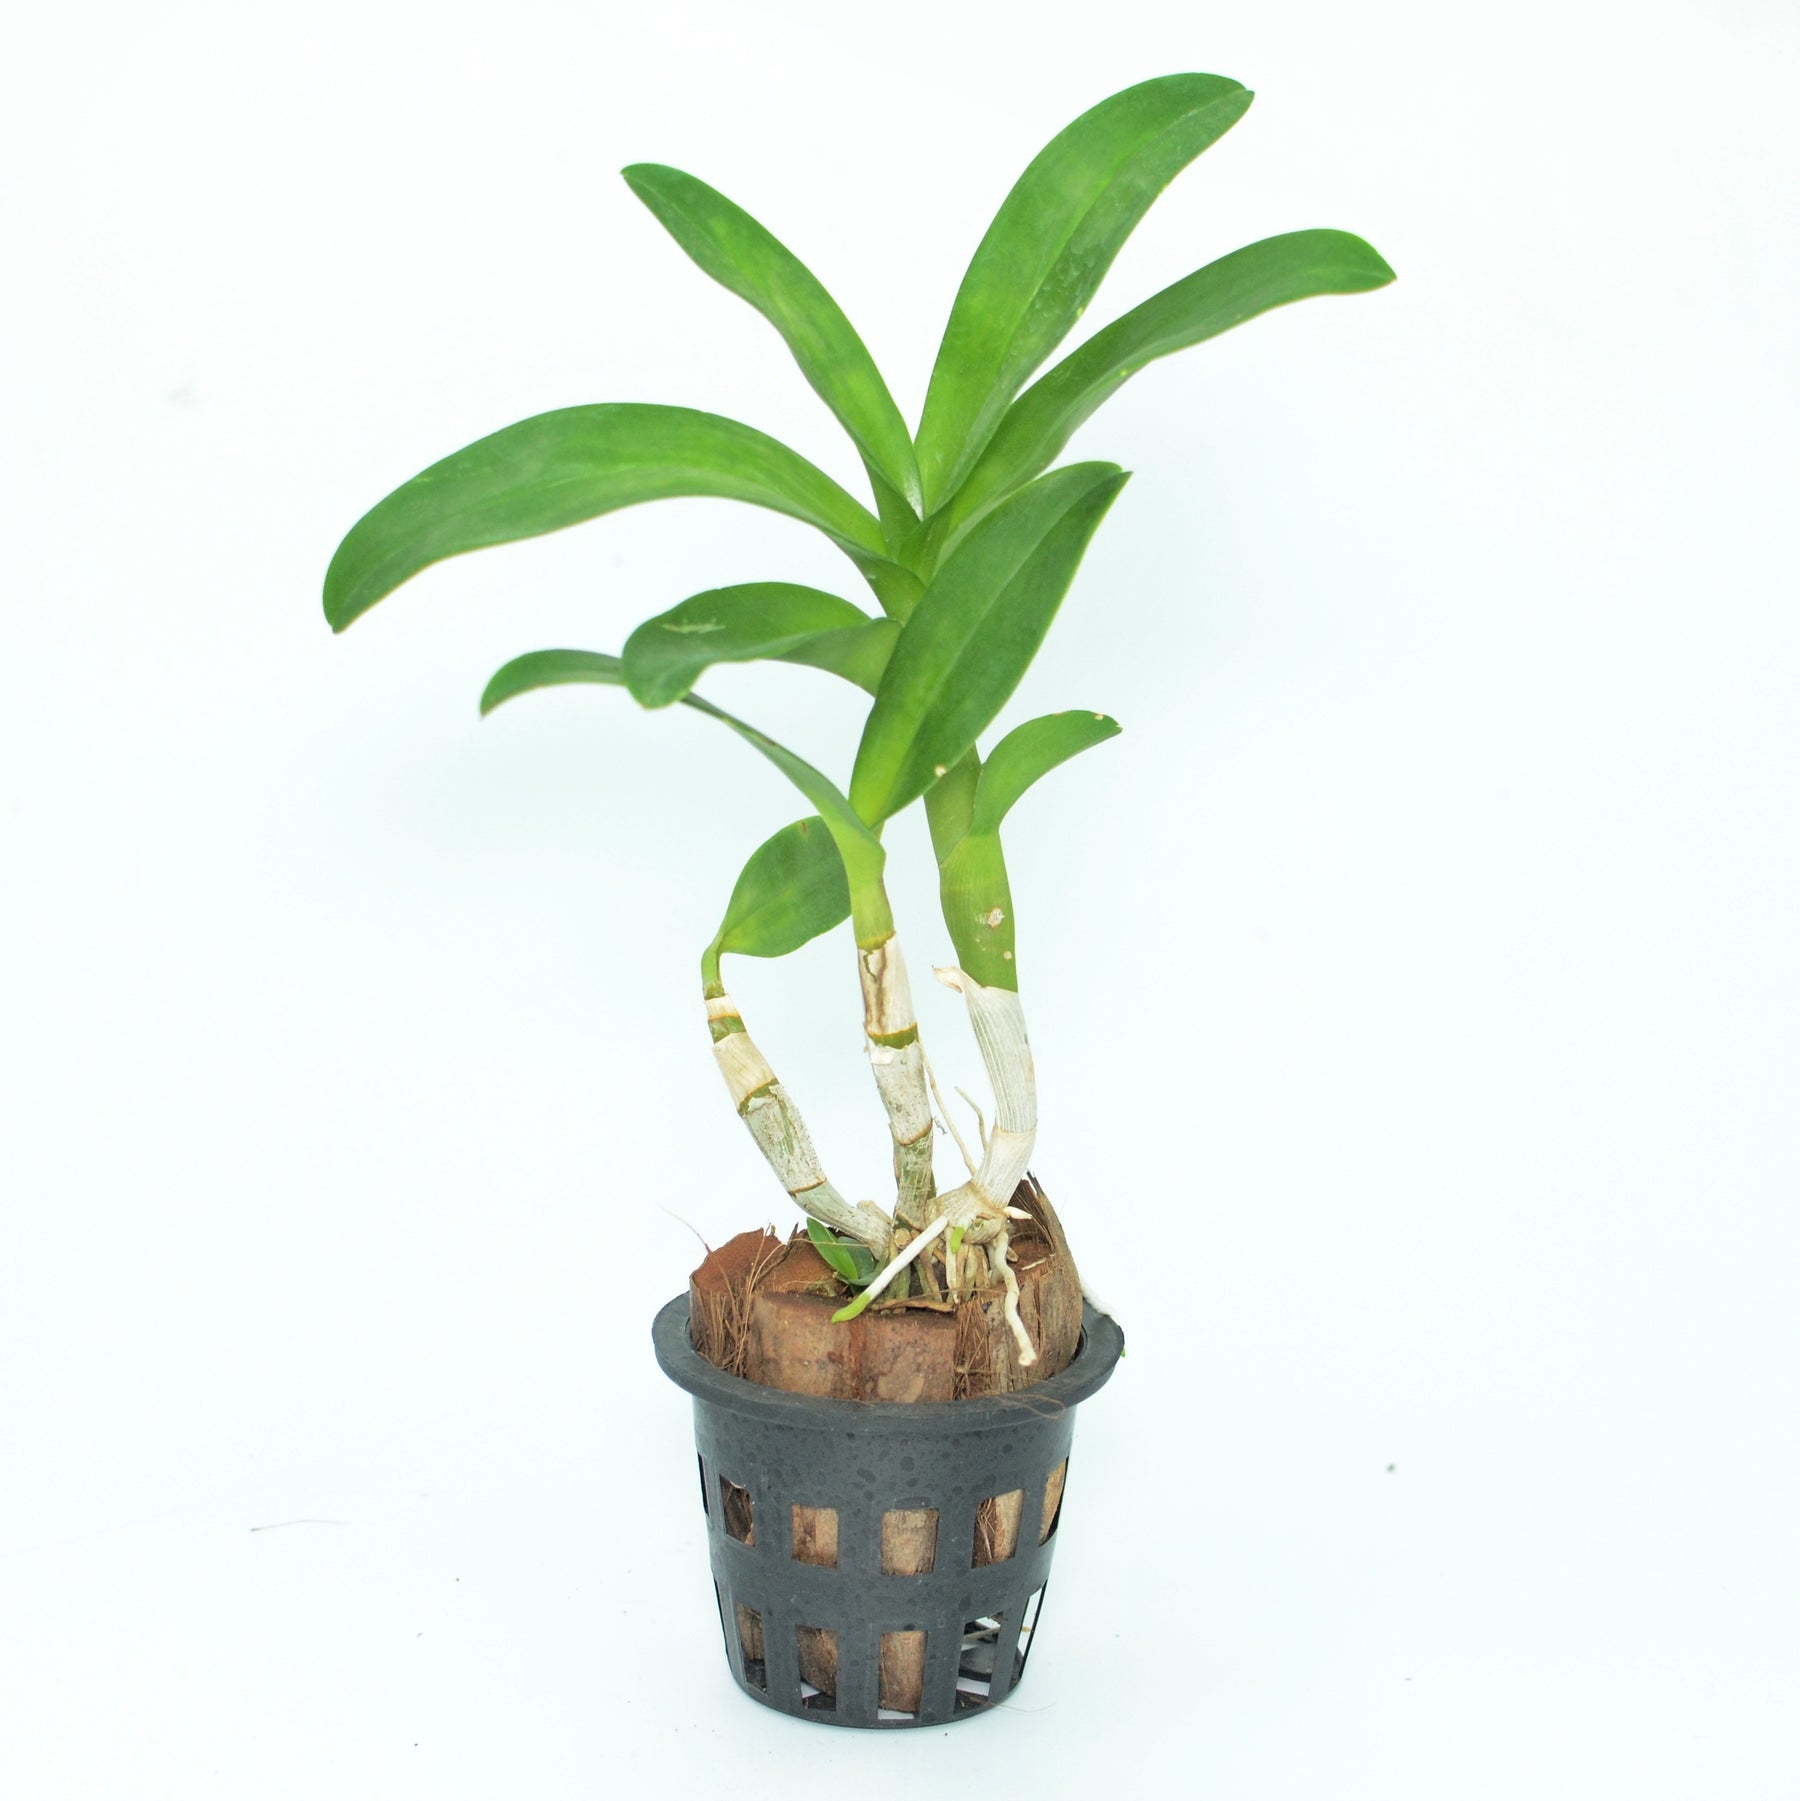 Dendrobium Burana Jade Orchid Live Plant - Exquisite Green Blooms for Your Indoor Garden